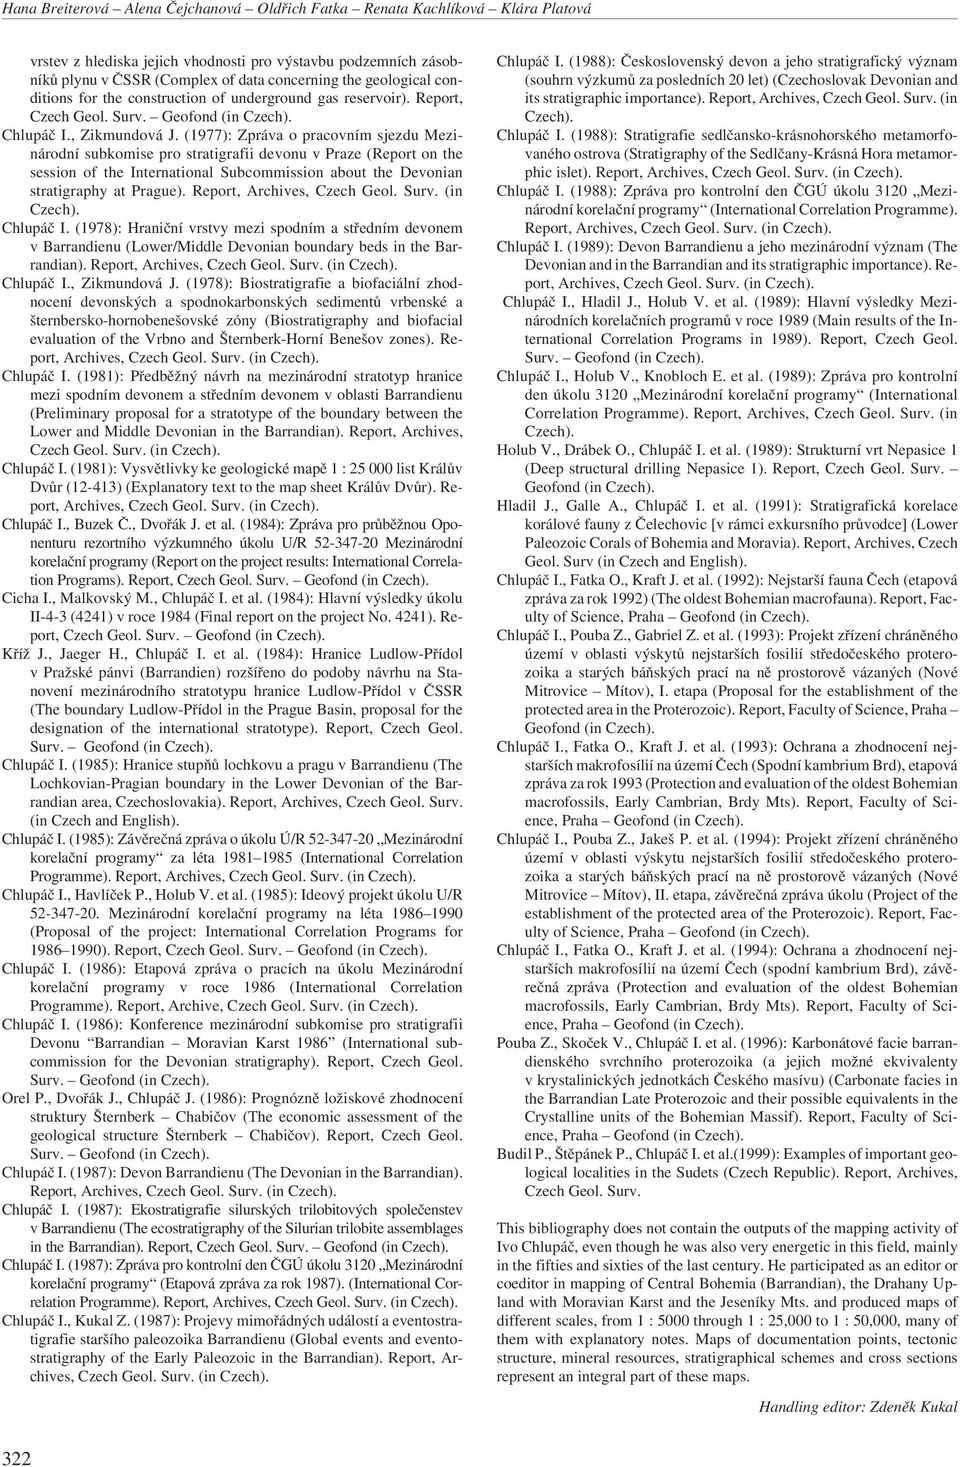 (1977): Zpráva o pracovním sjezdu Mezinárodní subkomise pro stratigrafii devonu v Praze (Report on the session of the International Subcommission about the Devonian stratigraphy at Prague).